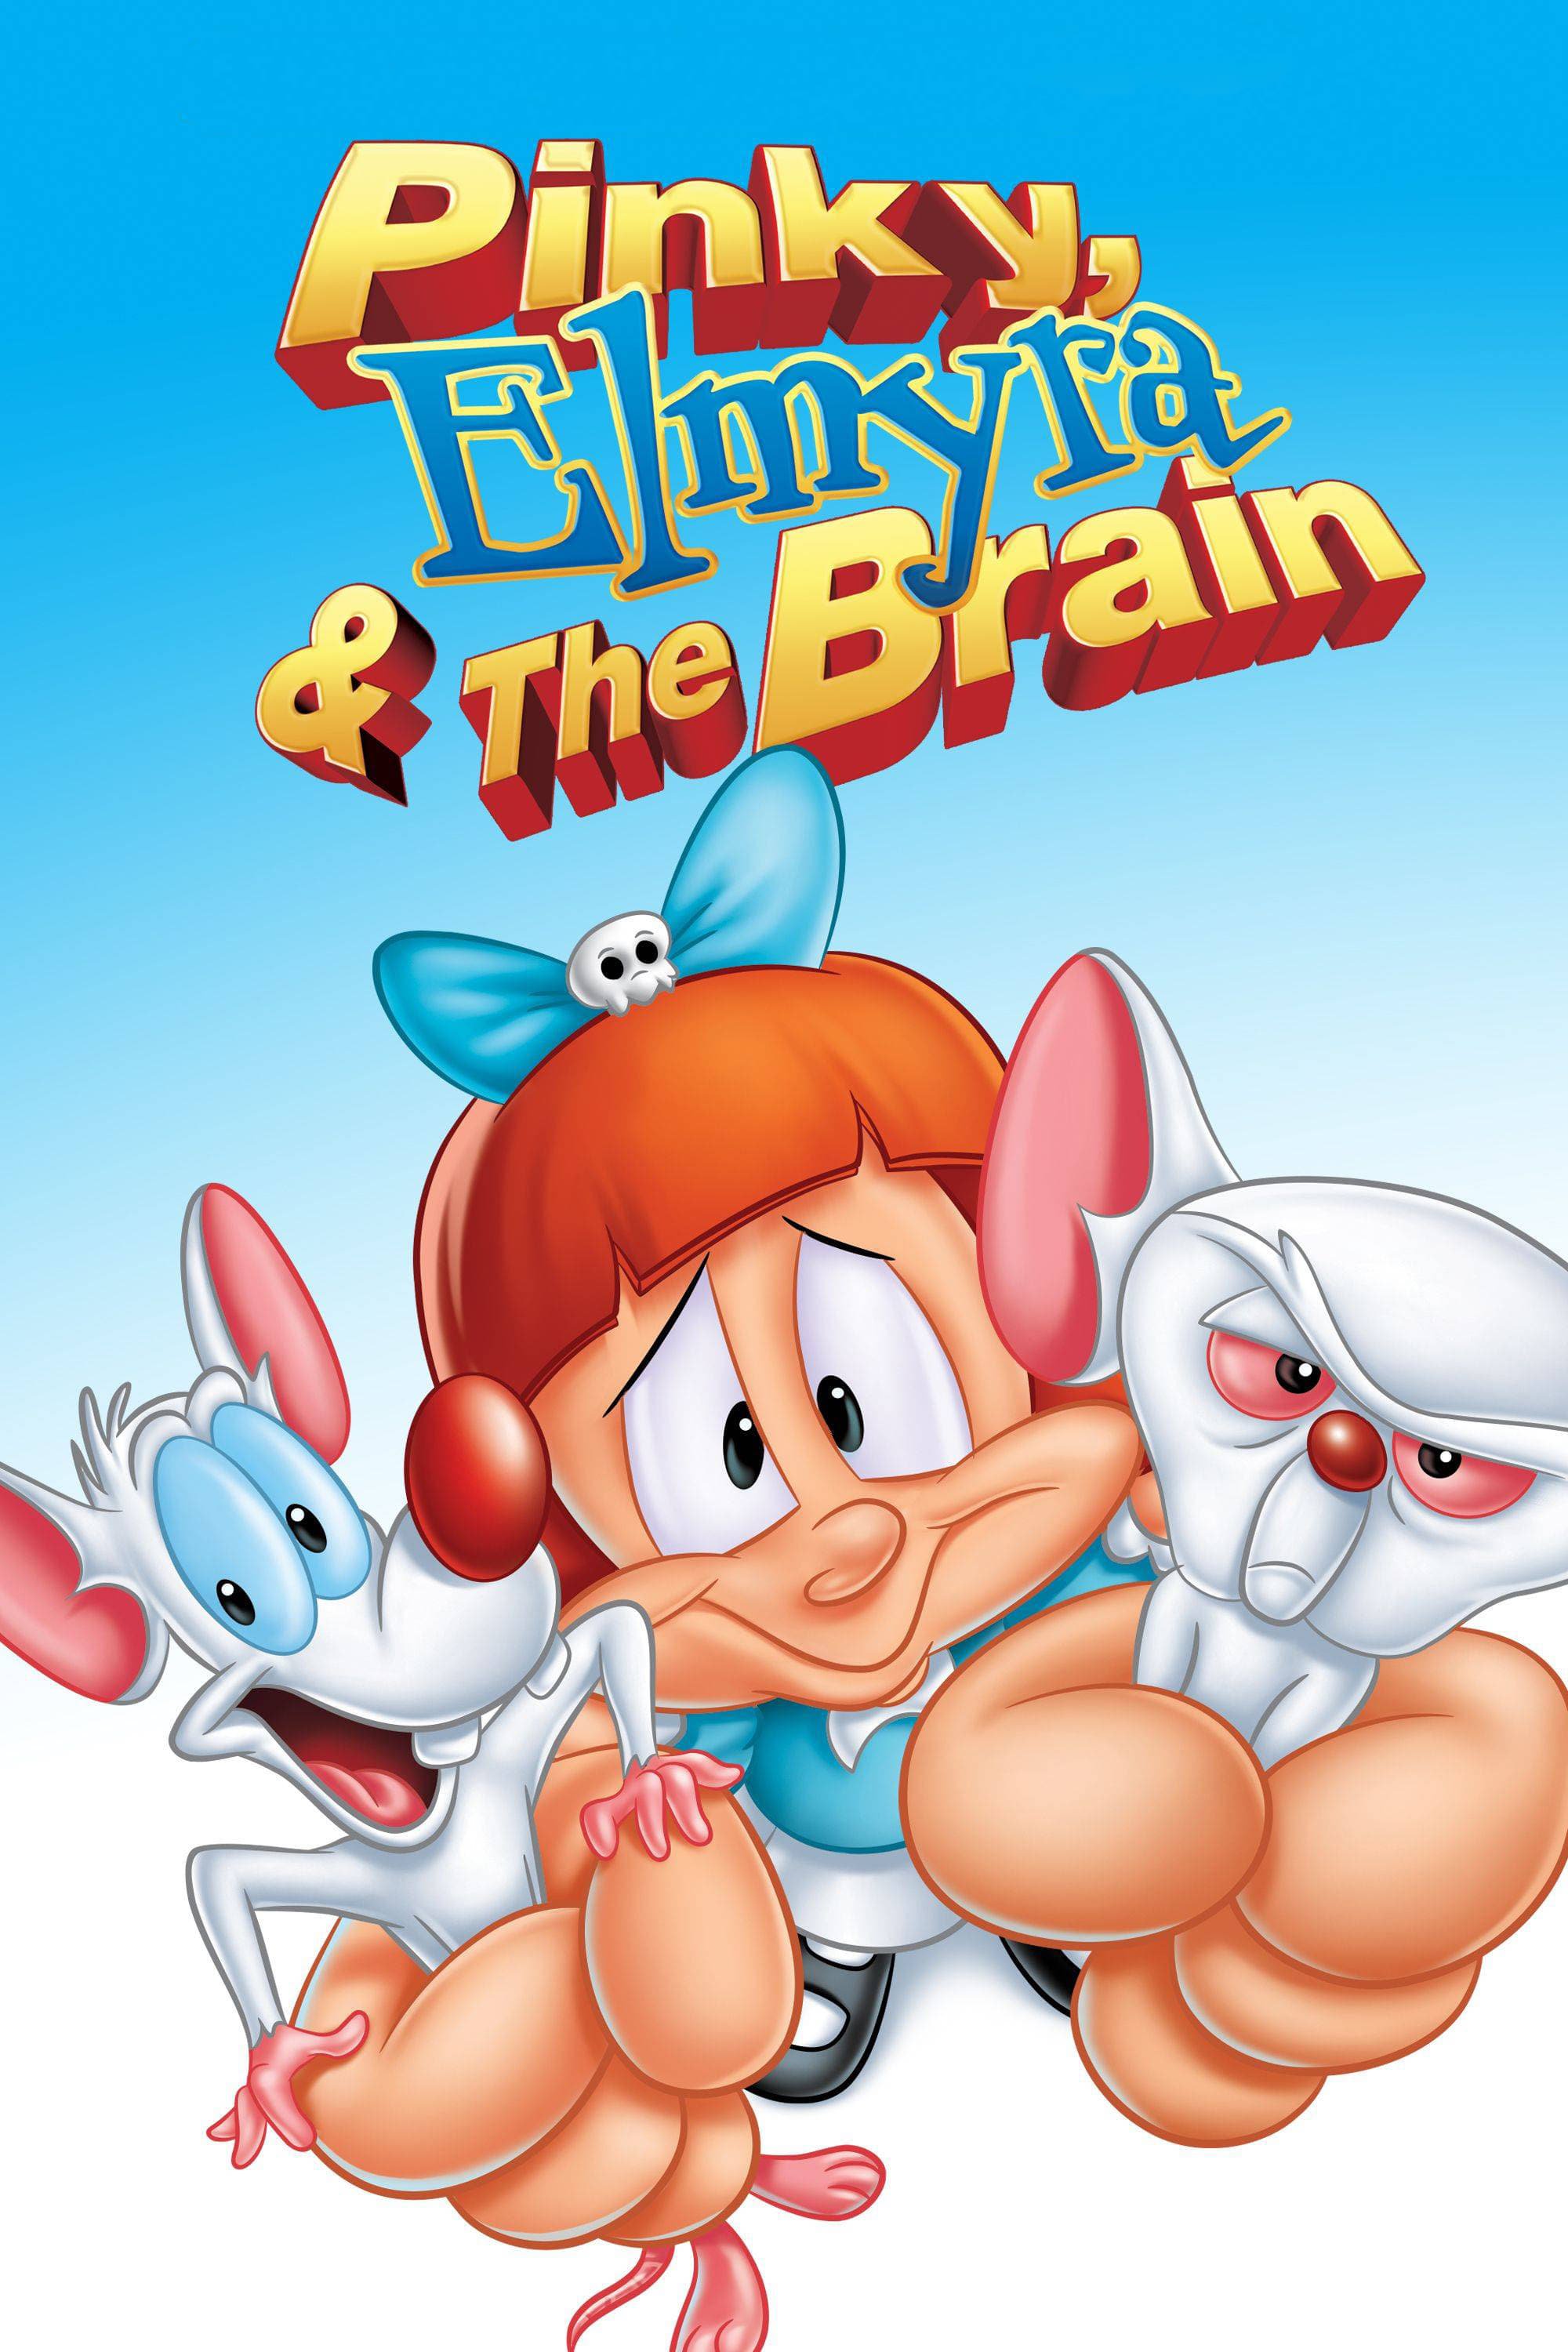 Pinky, Elvira y Cerebro (1998)